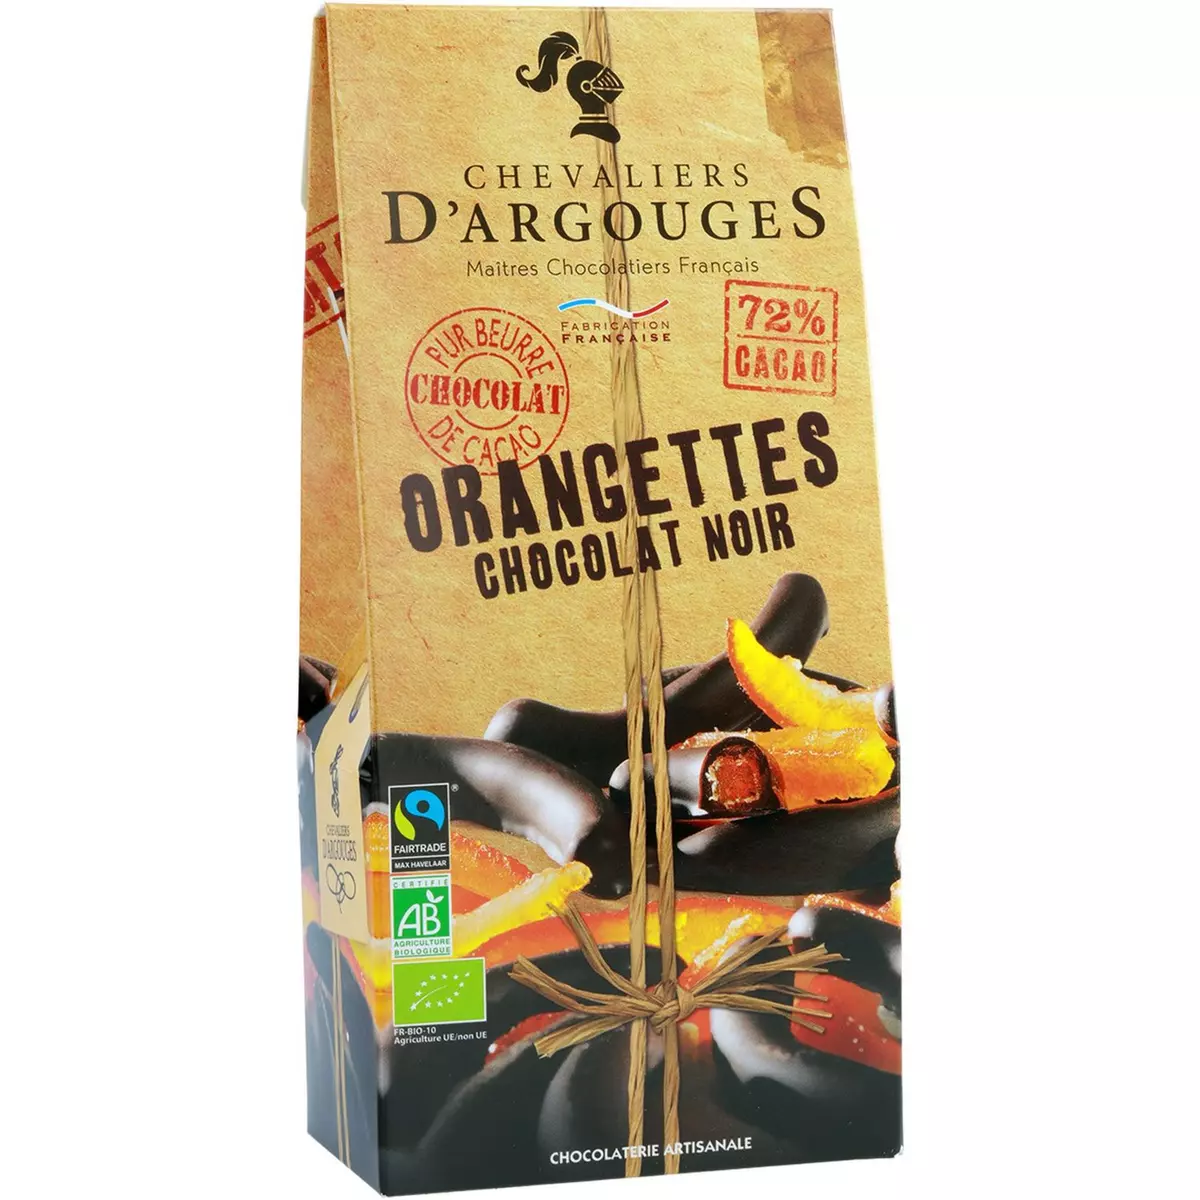 CHEVALIERS D'ARGOUGES Orangettes au chocolat noir bio 160g